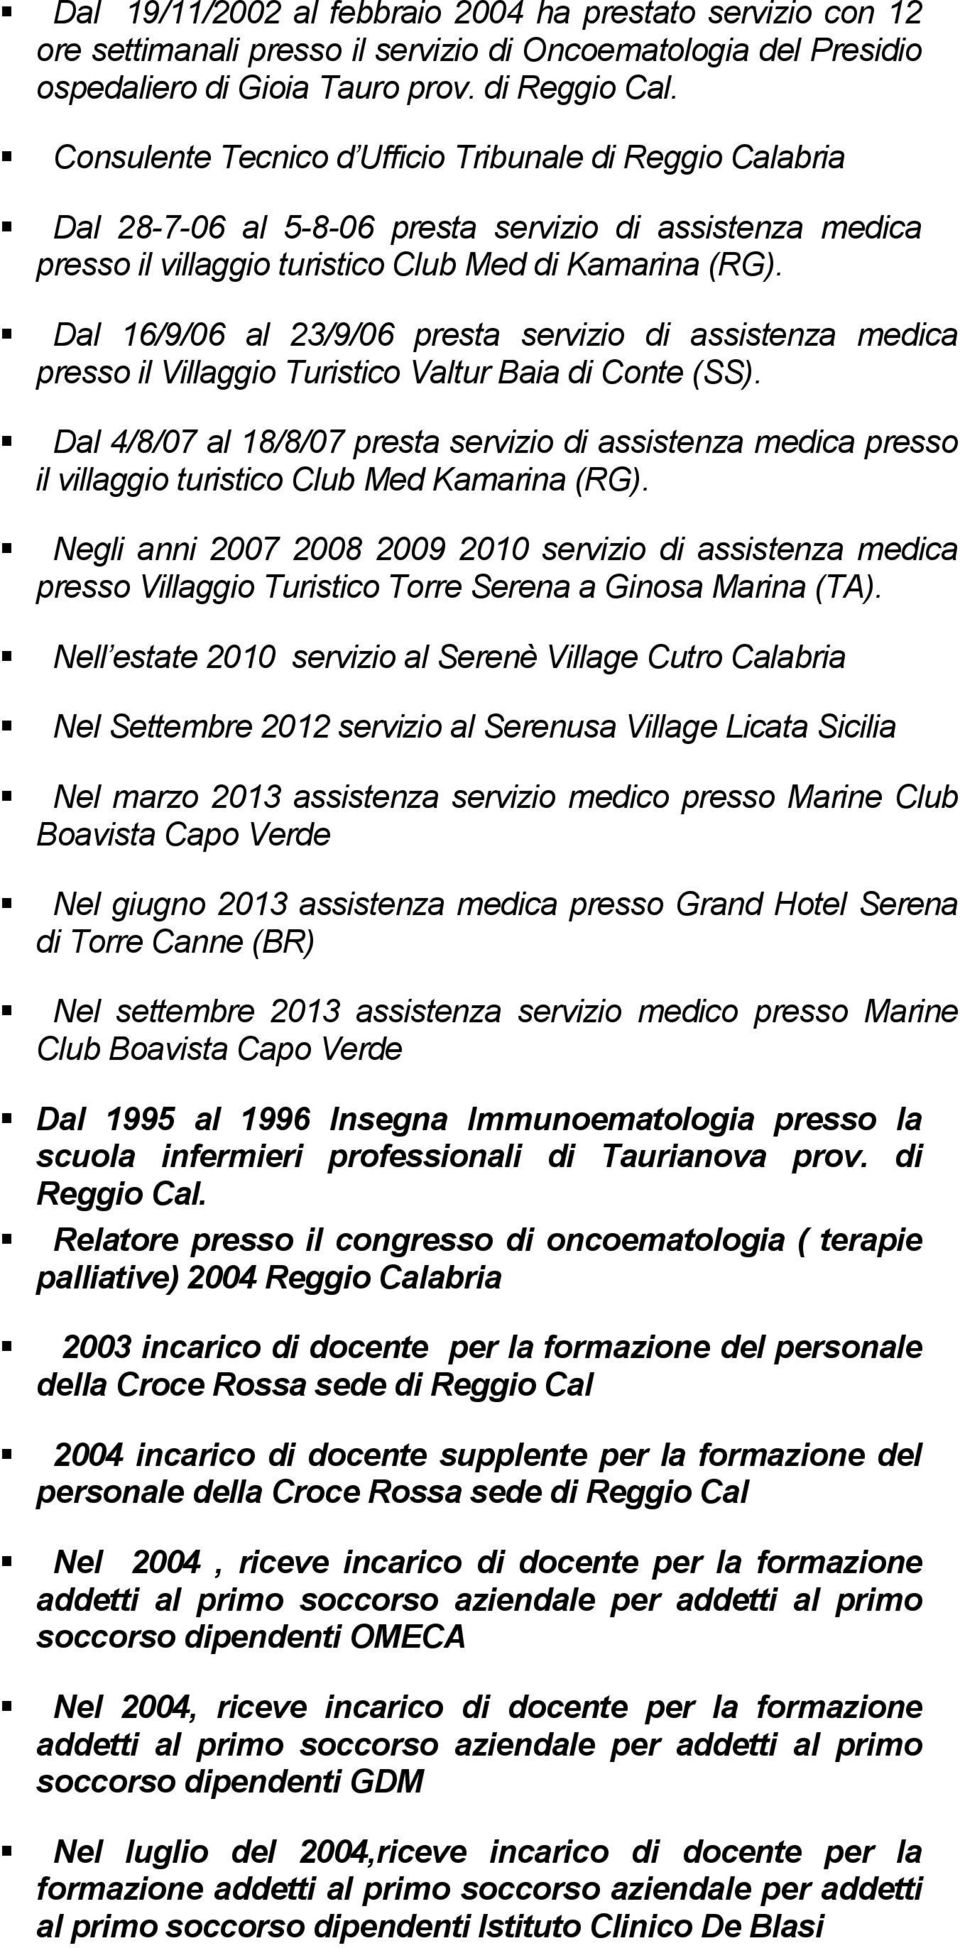 Dal 16/9/06 al 23/9/06 presta servizio di assistenza medica presso il Villaggio Turistico Valtur Baia di Conte (SS).